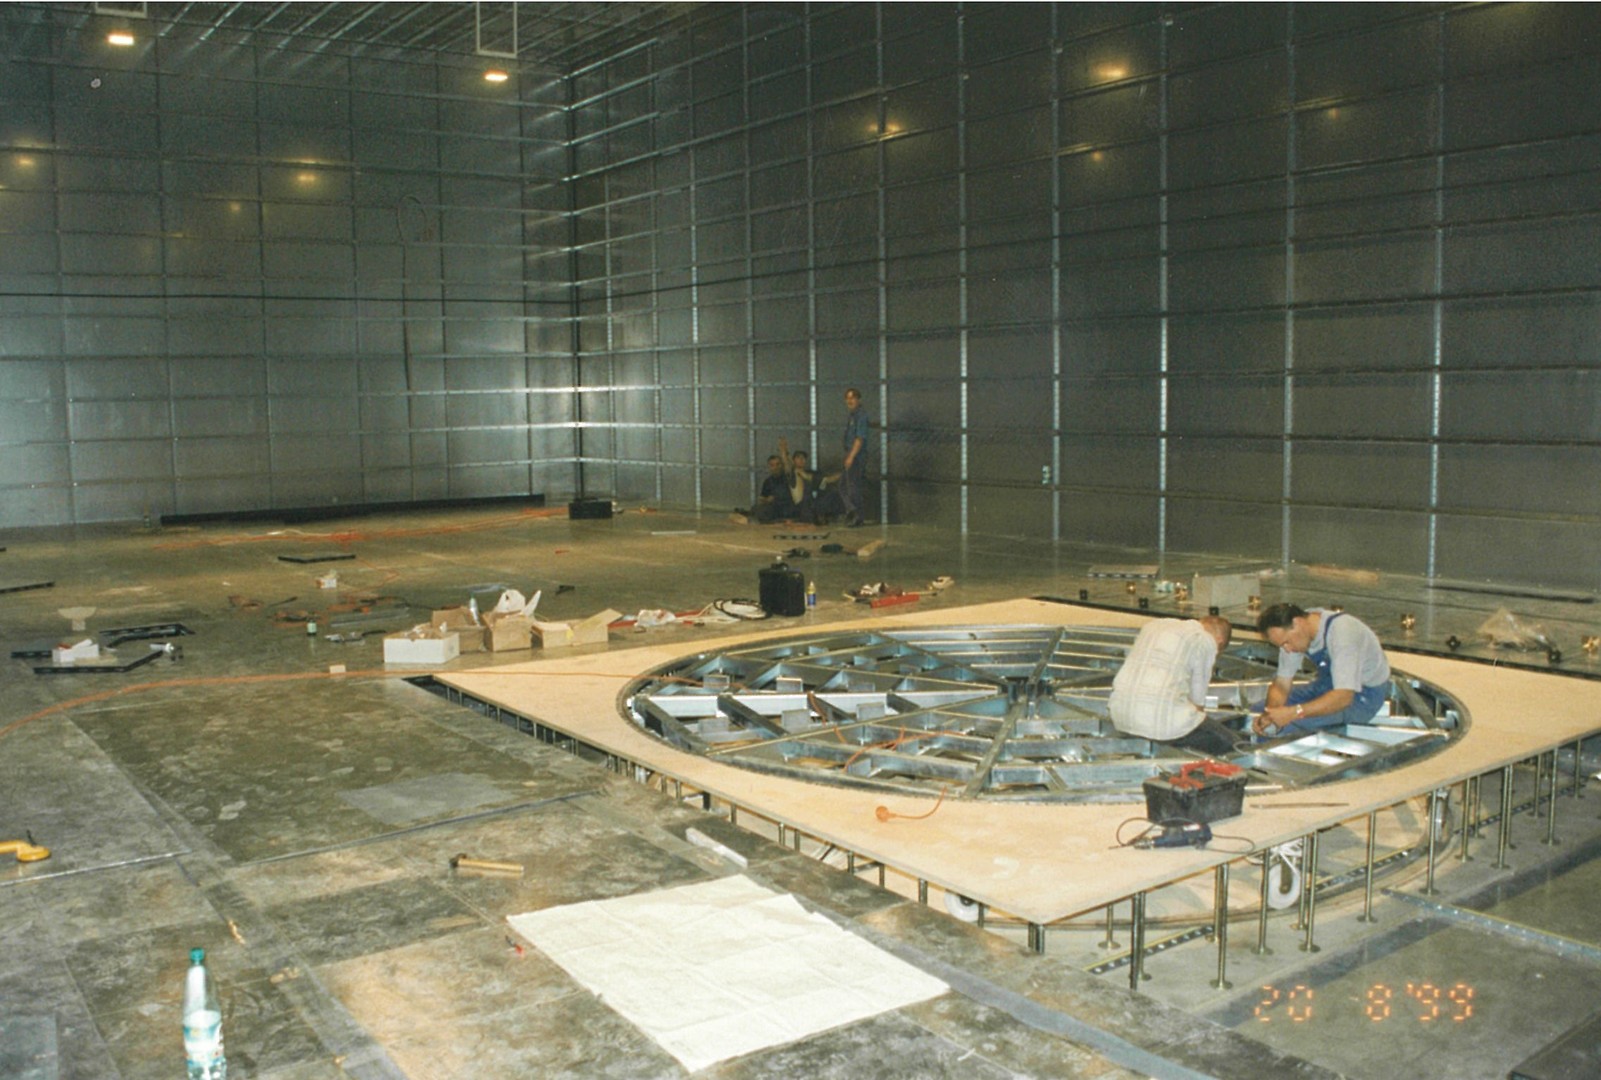 Budowa komory bezechowej CSKER, 1999 rok - dwóch pracowników montuje urządzenia w podłodze komory